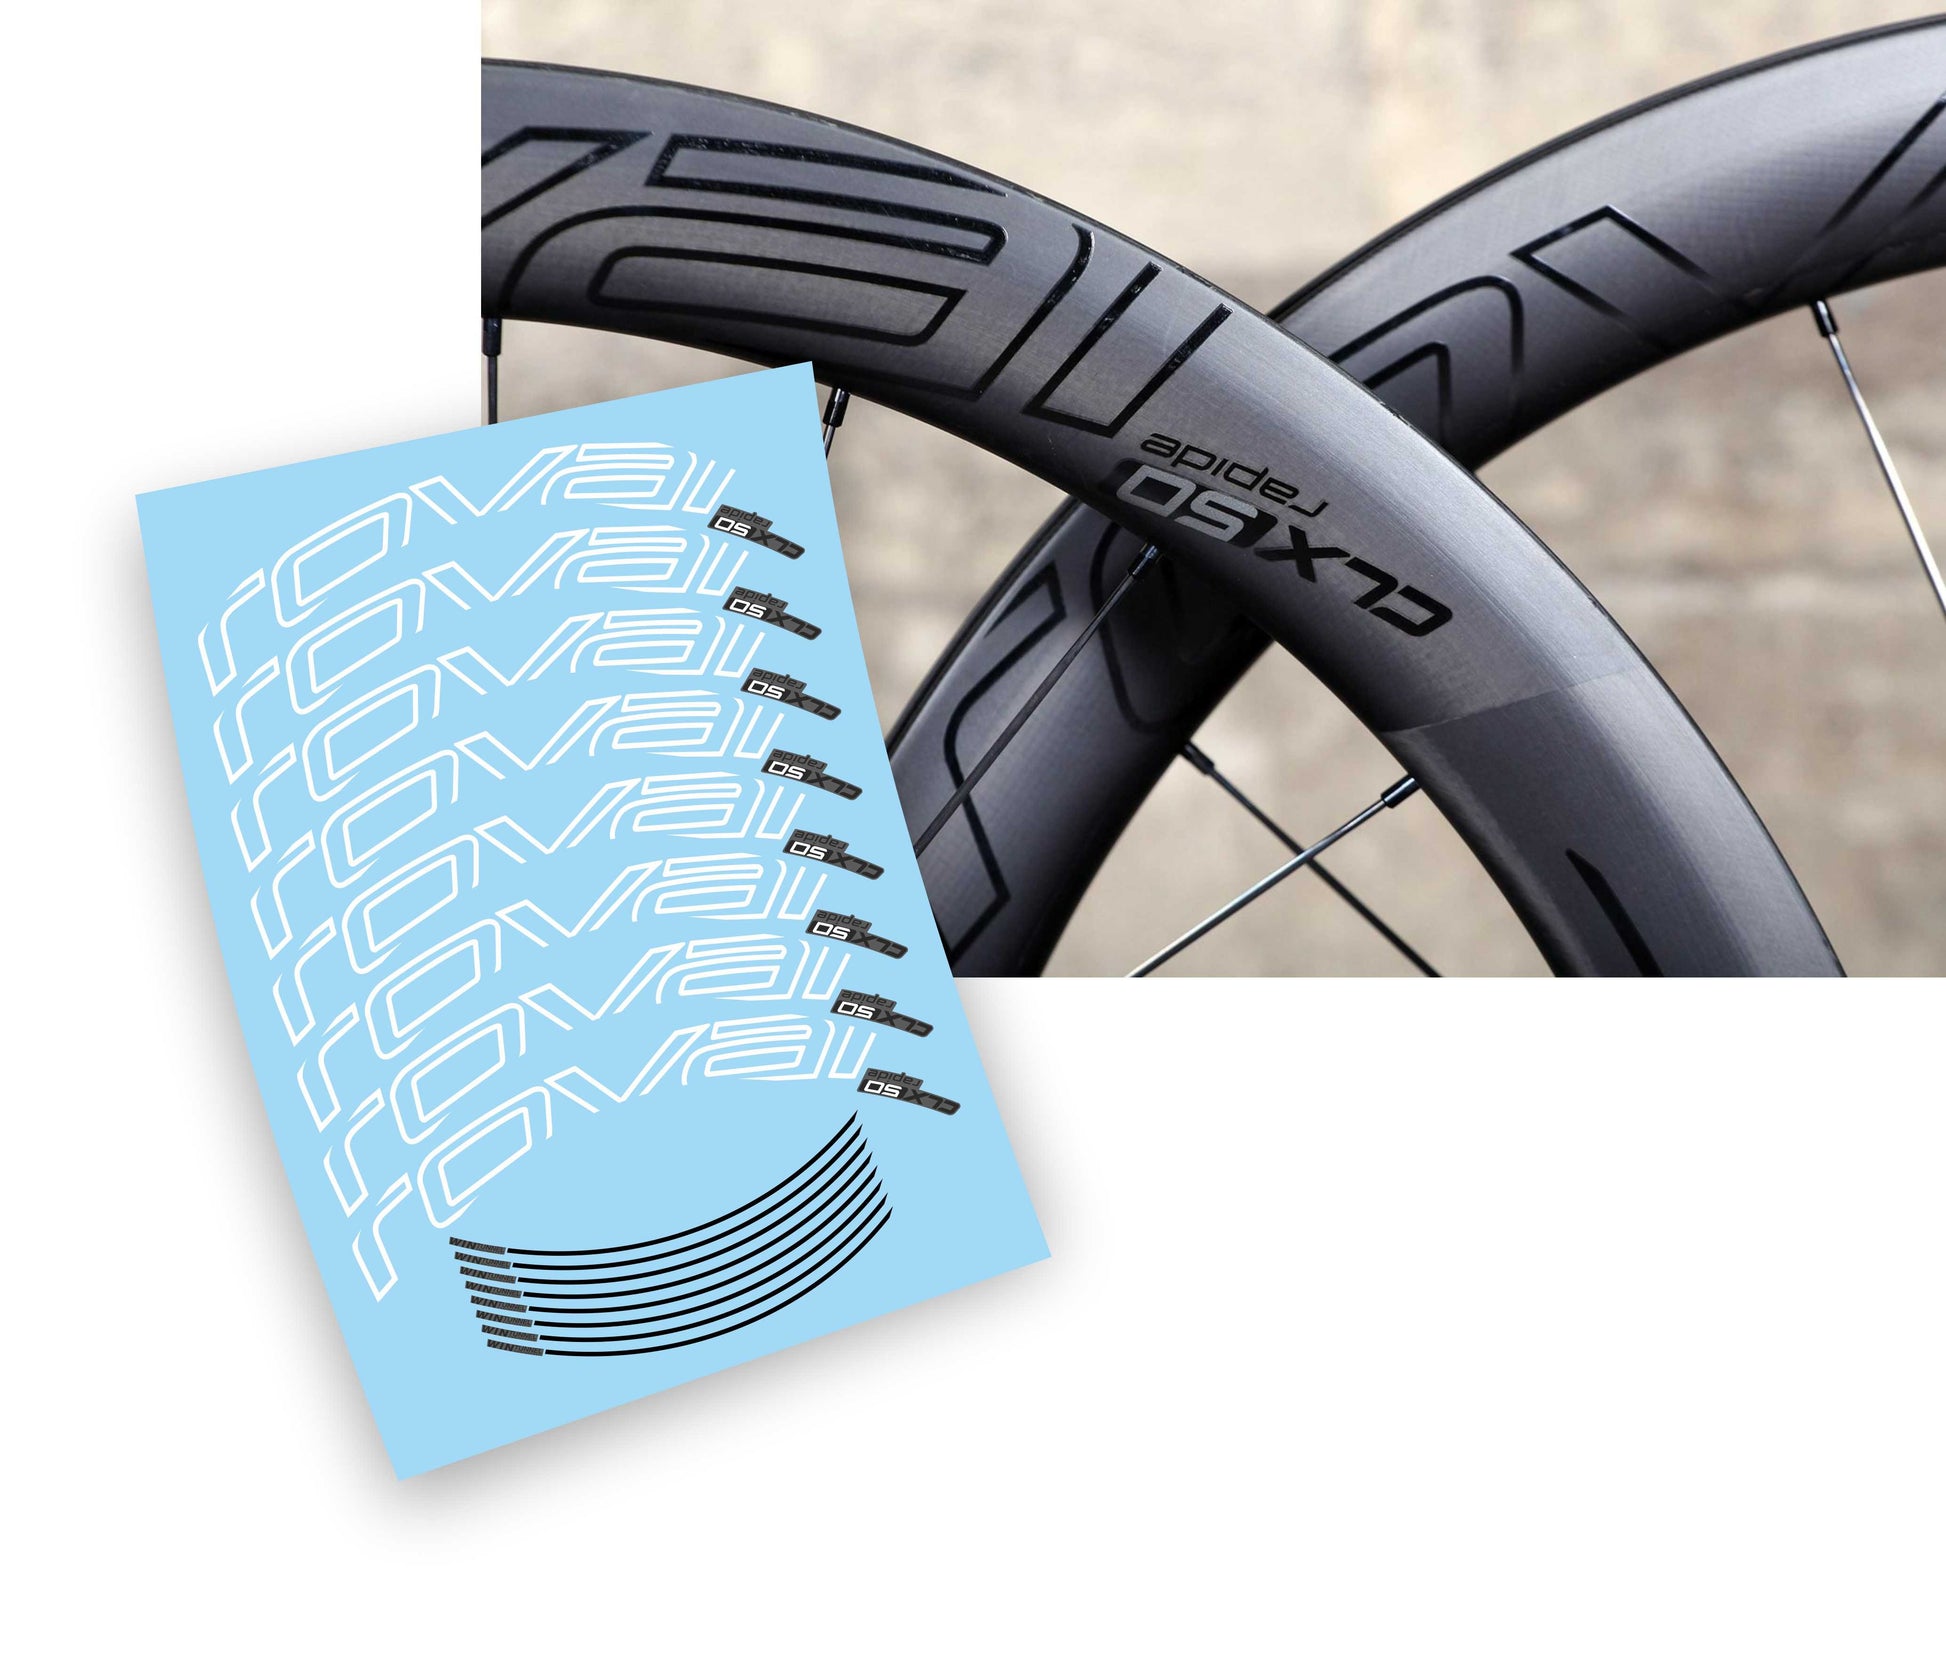 Roval CLX 50 rapide kit adesivi per cerchi bicicletta da corsa – L'adesivo .com